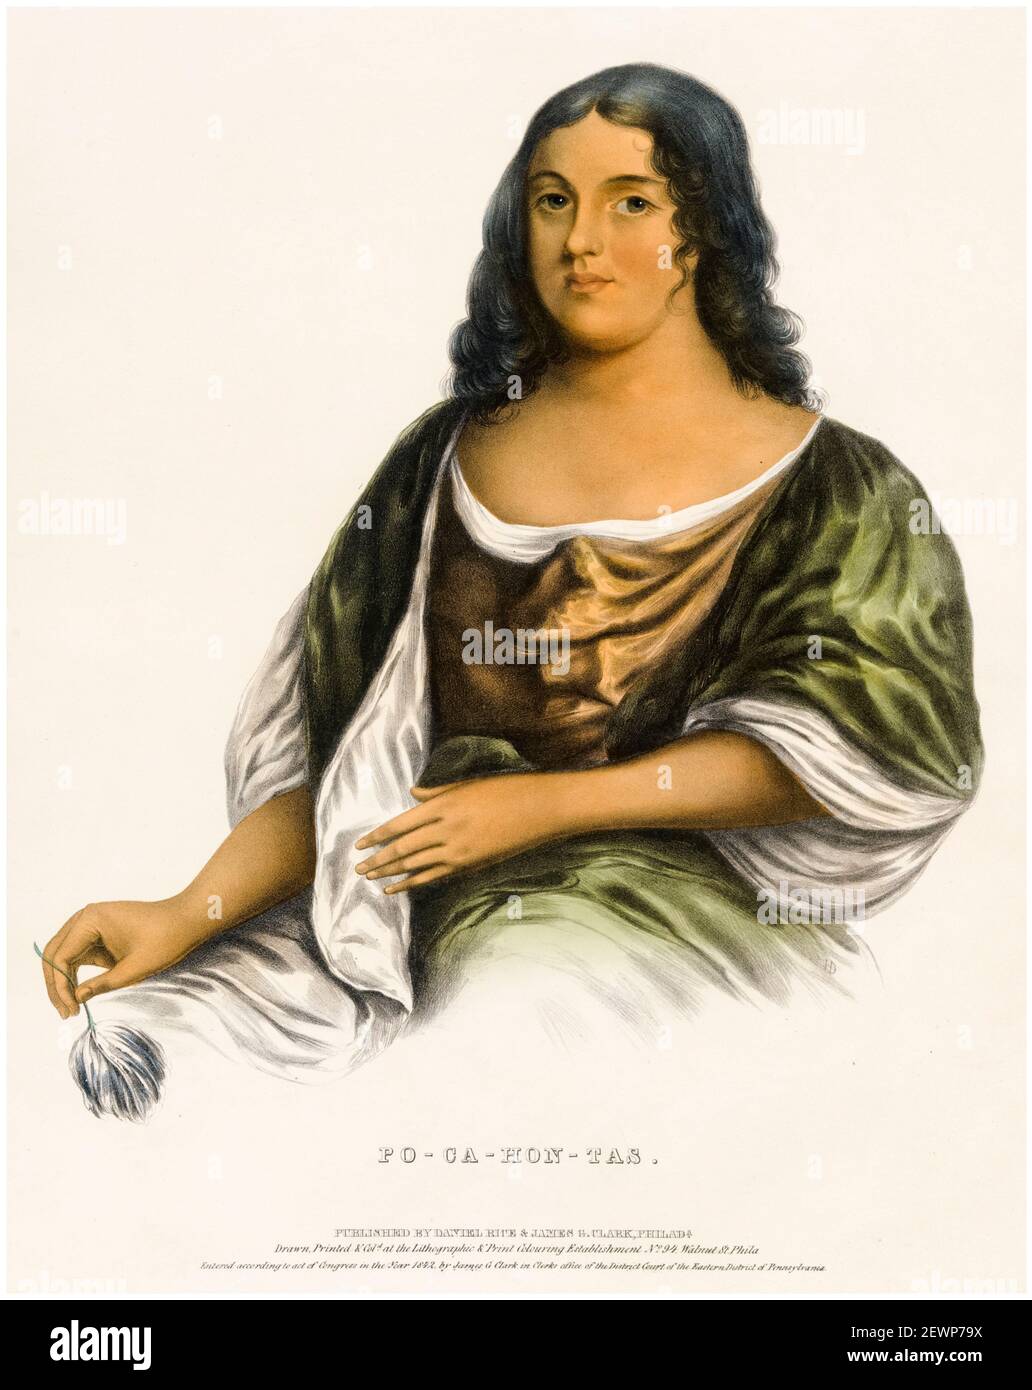 Pocahontas (c1595-1617), femme amérindienne du peuple Powhatan, imprimé en HD, copie d'après Robert Matthew Sully, 1842 Banque D'Images